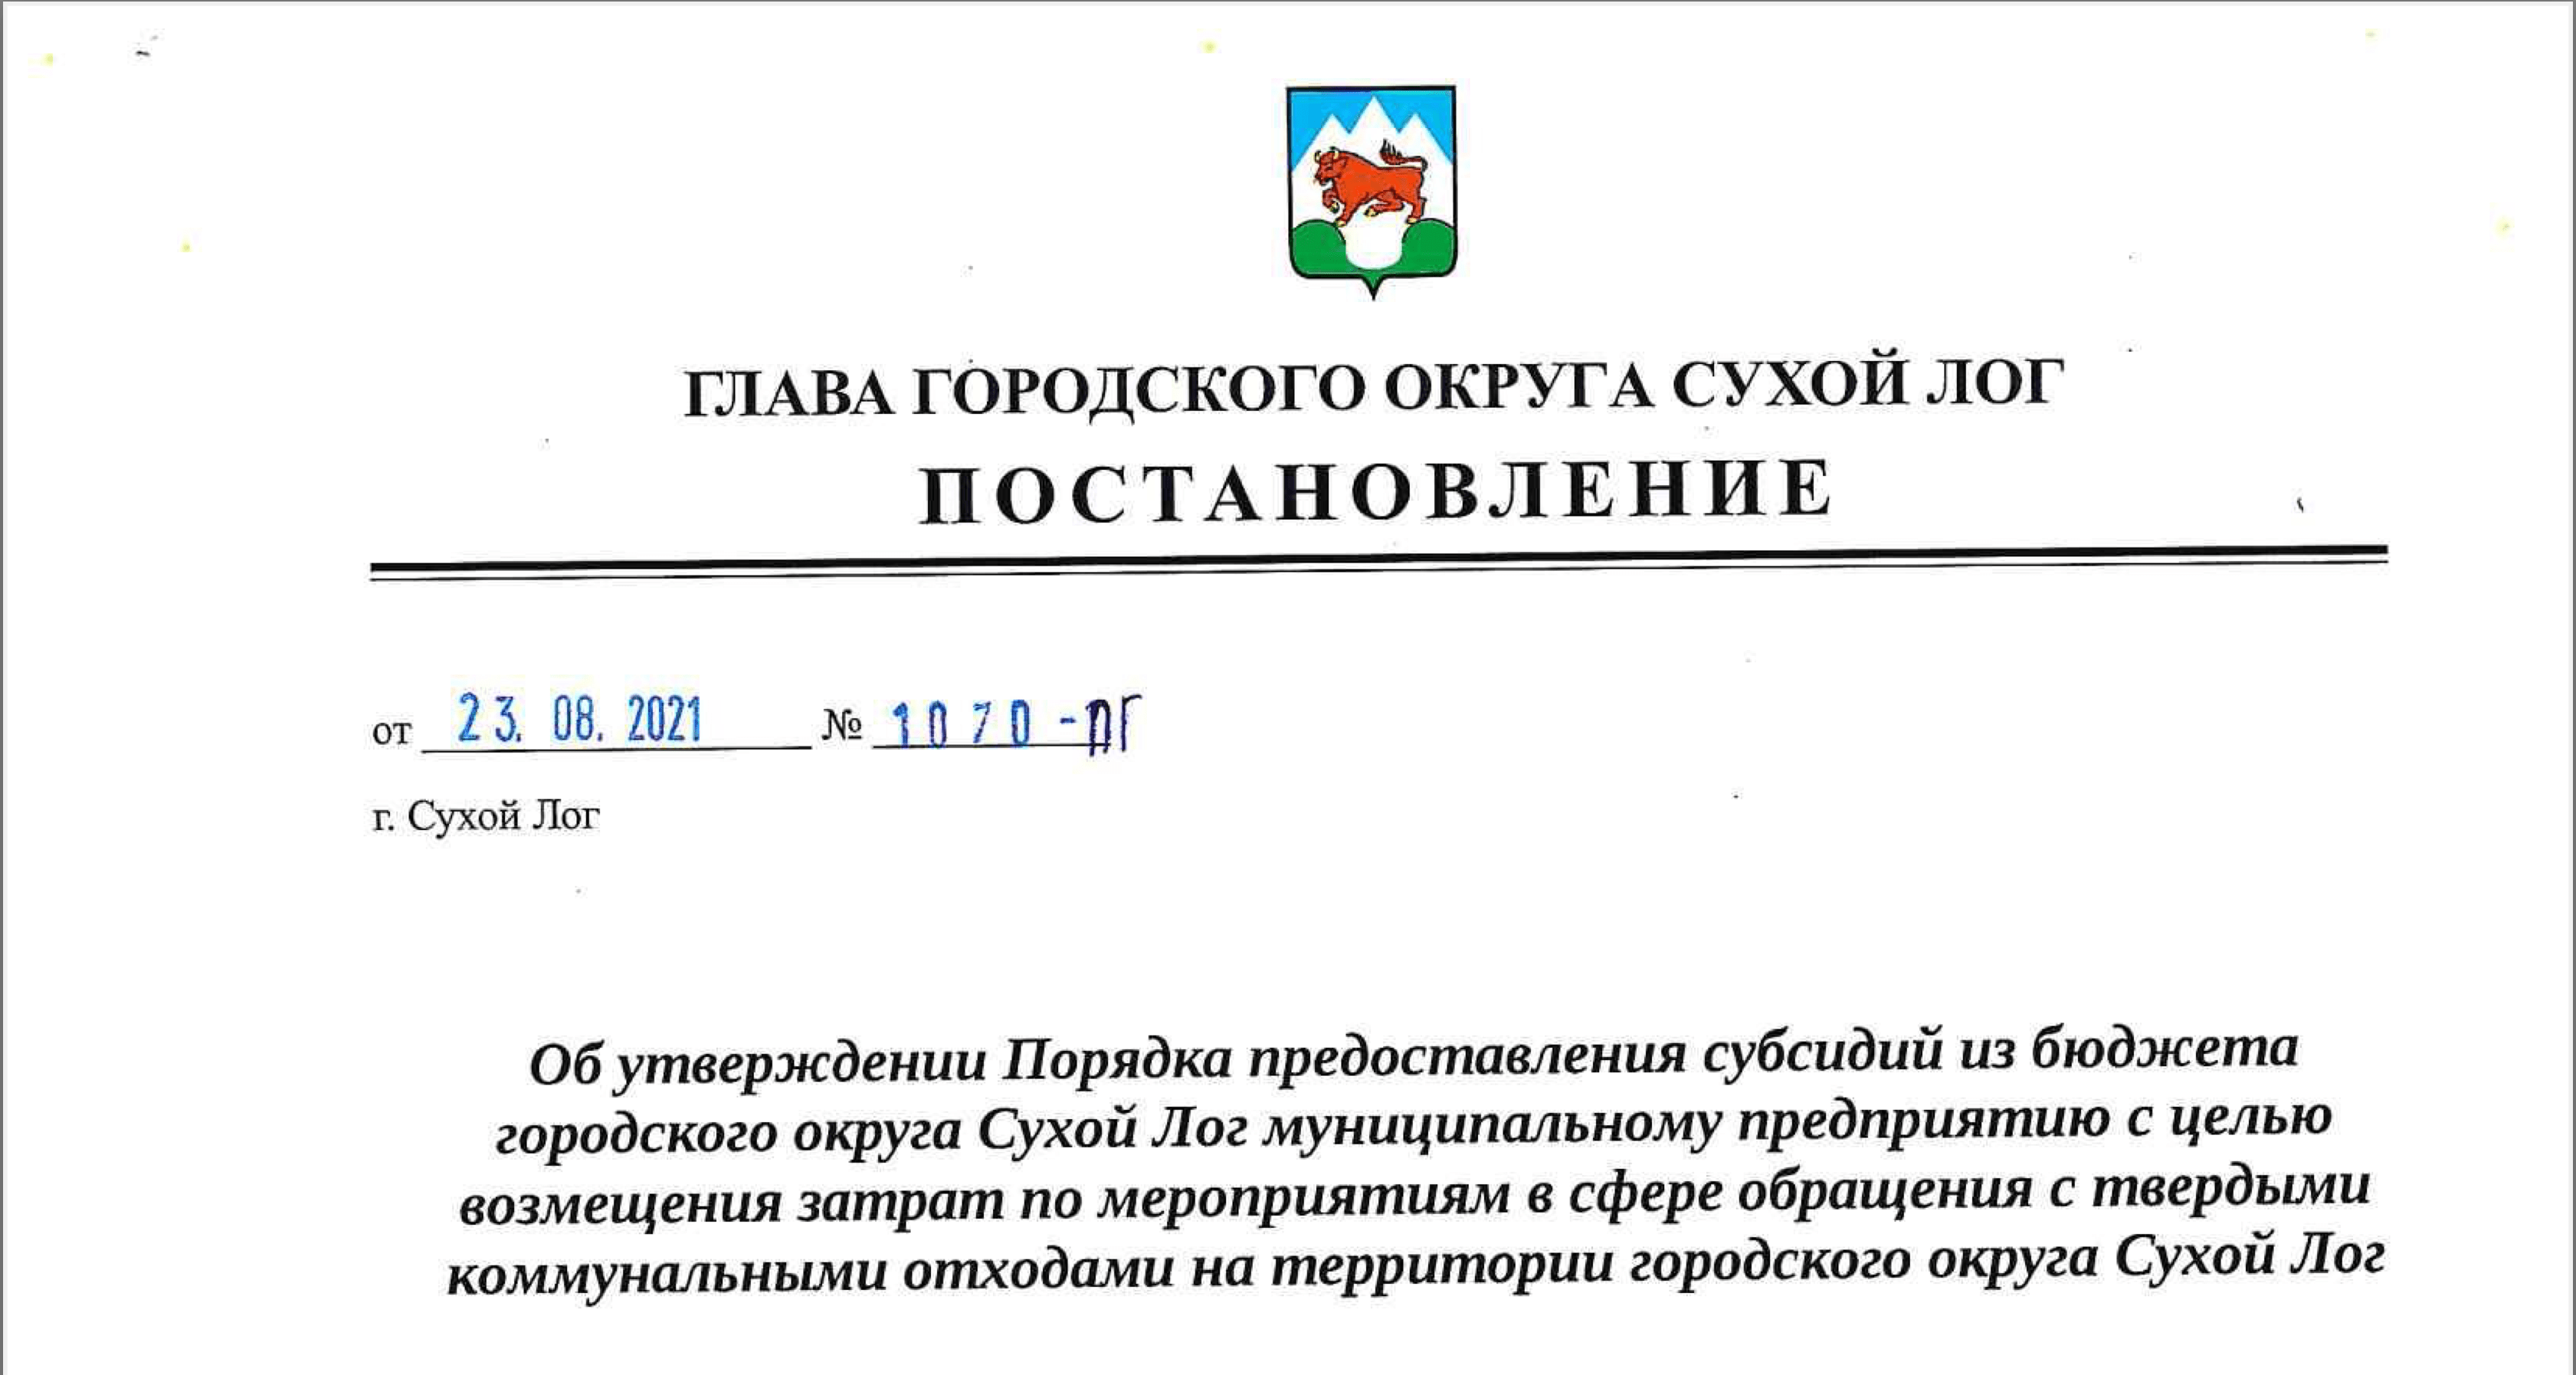 Постановление Главы городского округа Сухой Лог от 23.08.2021 №1070-ПГ